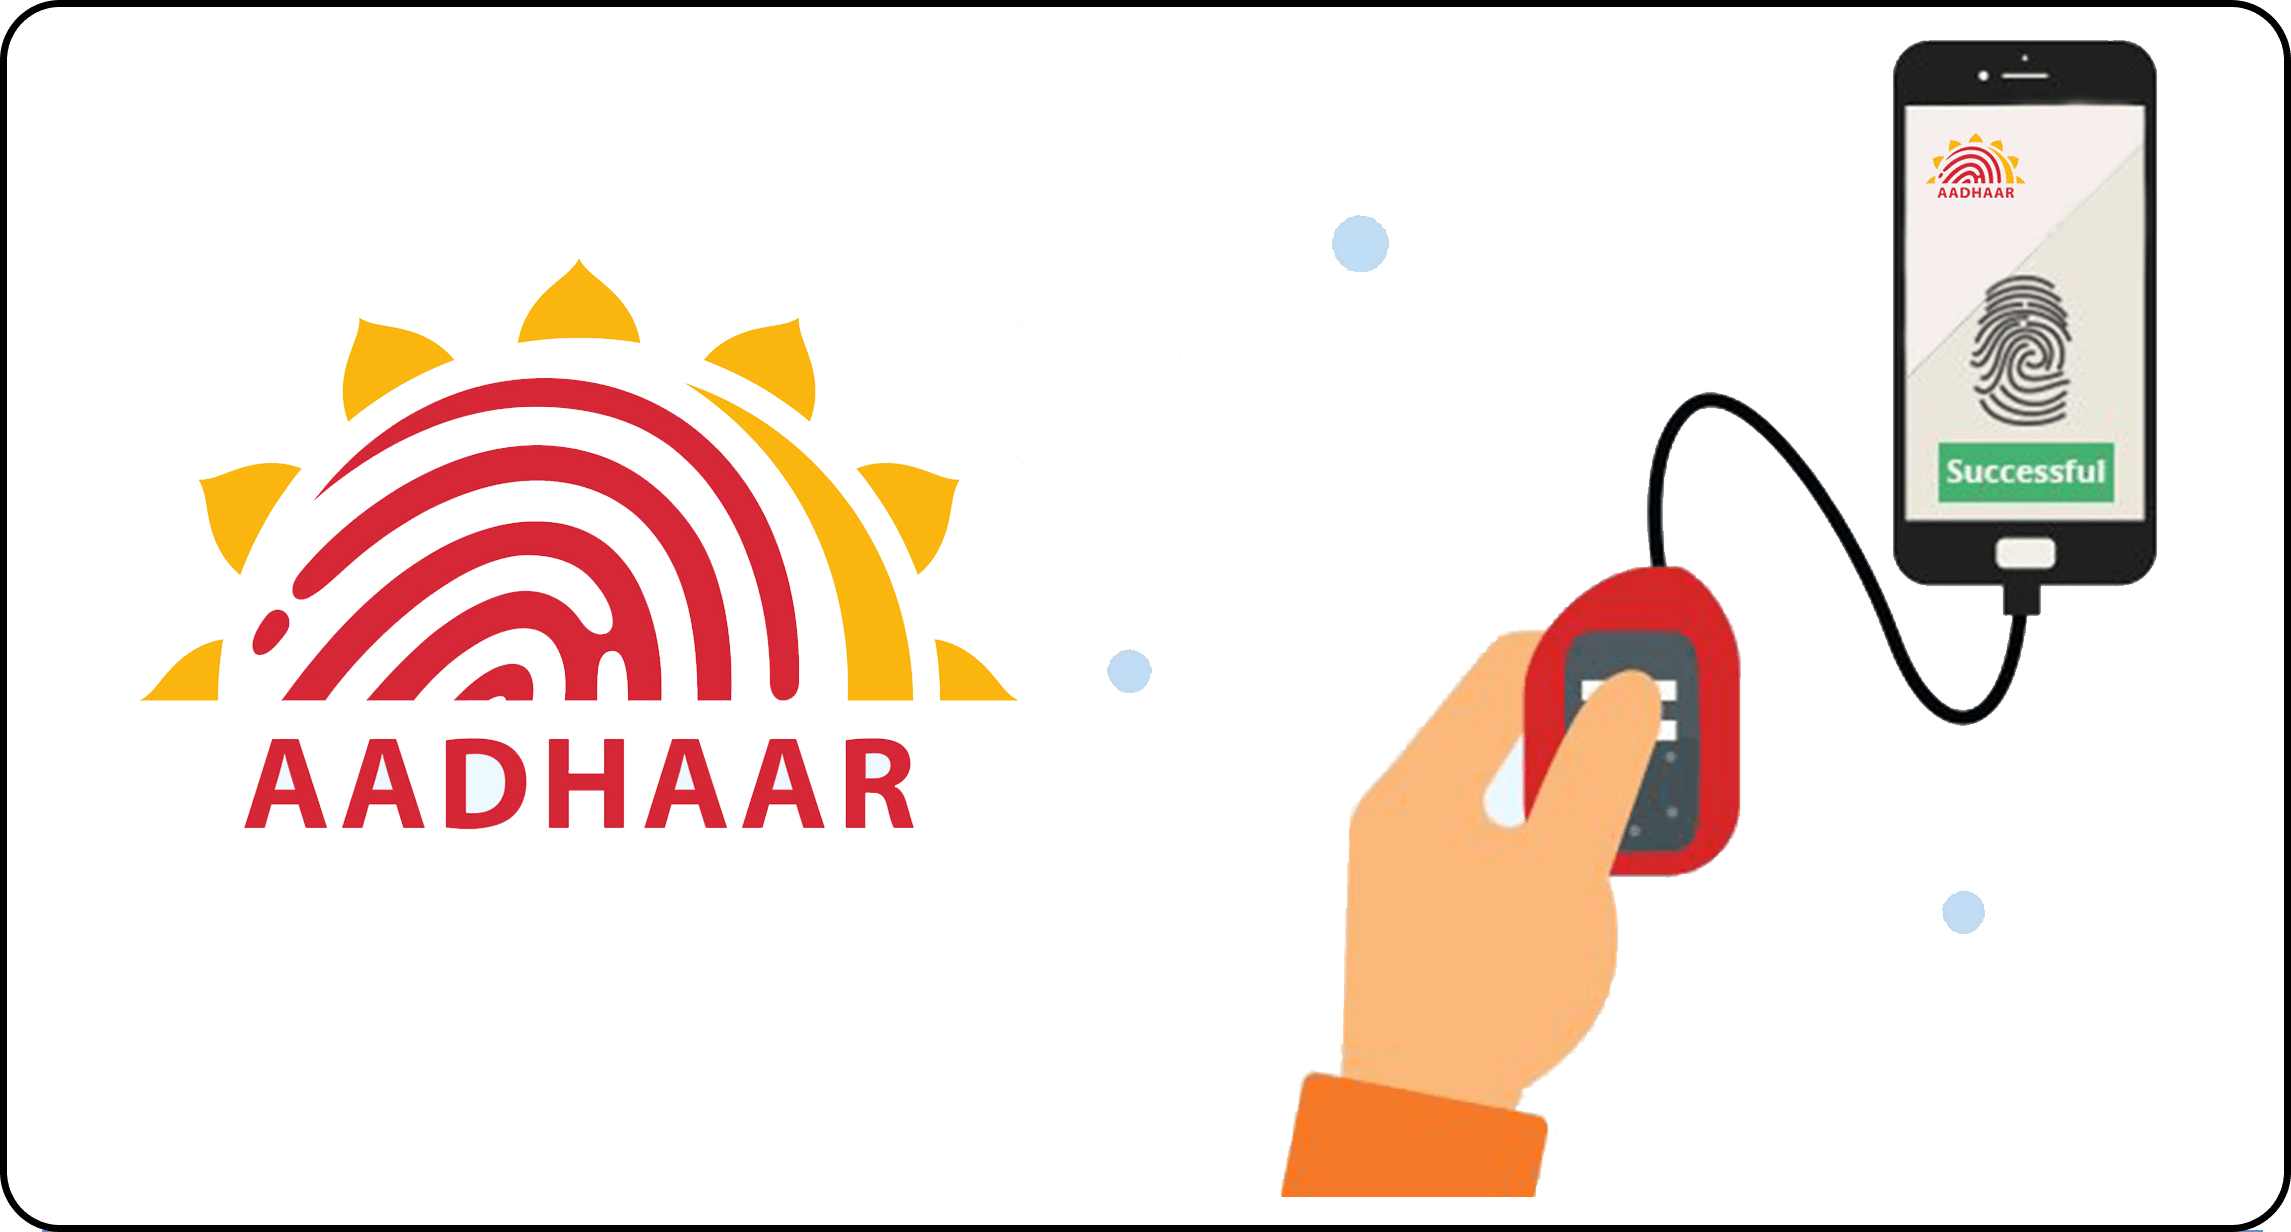 aadhar verification image
